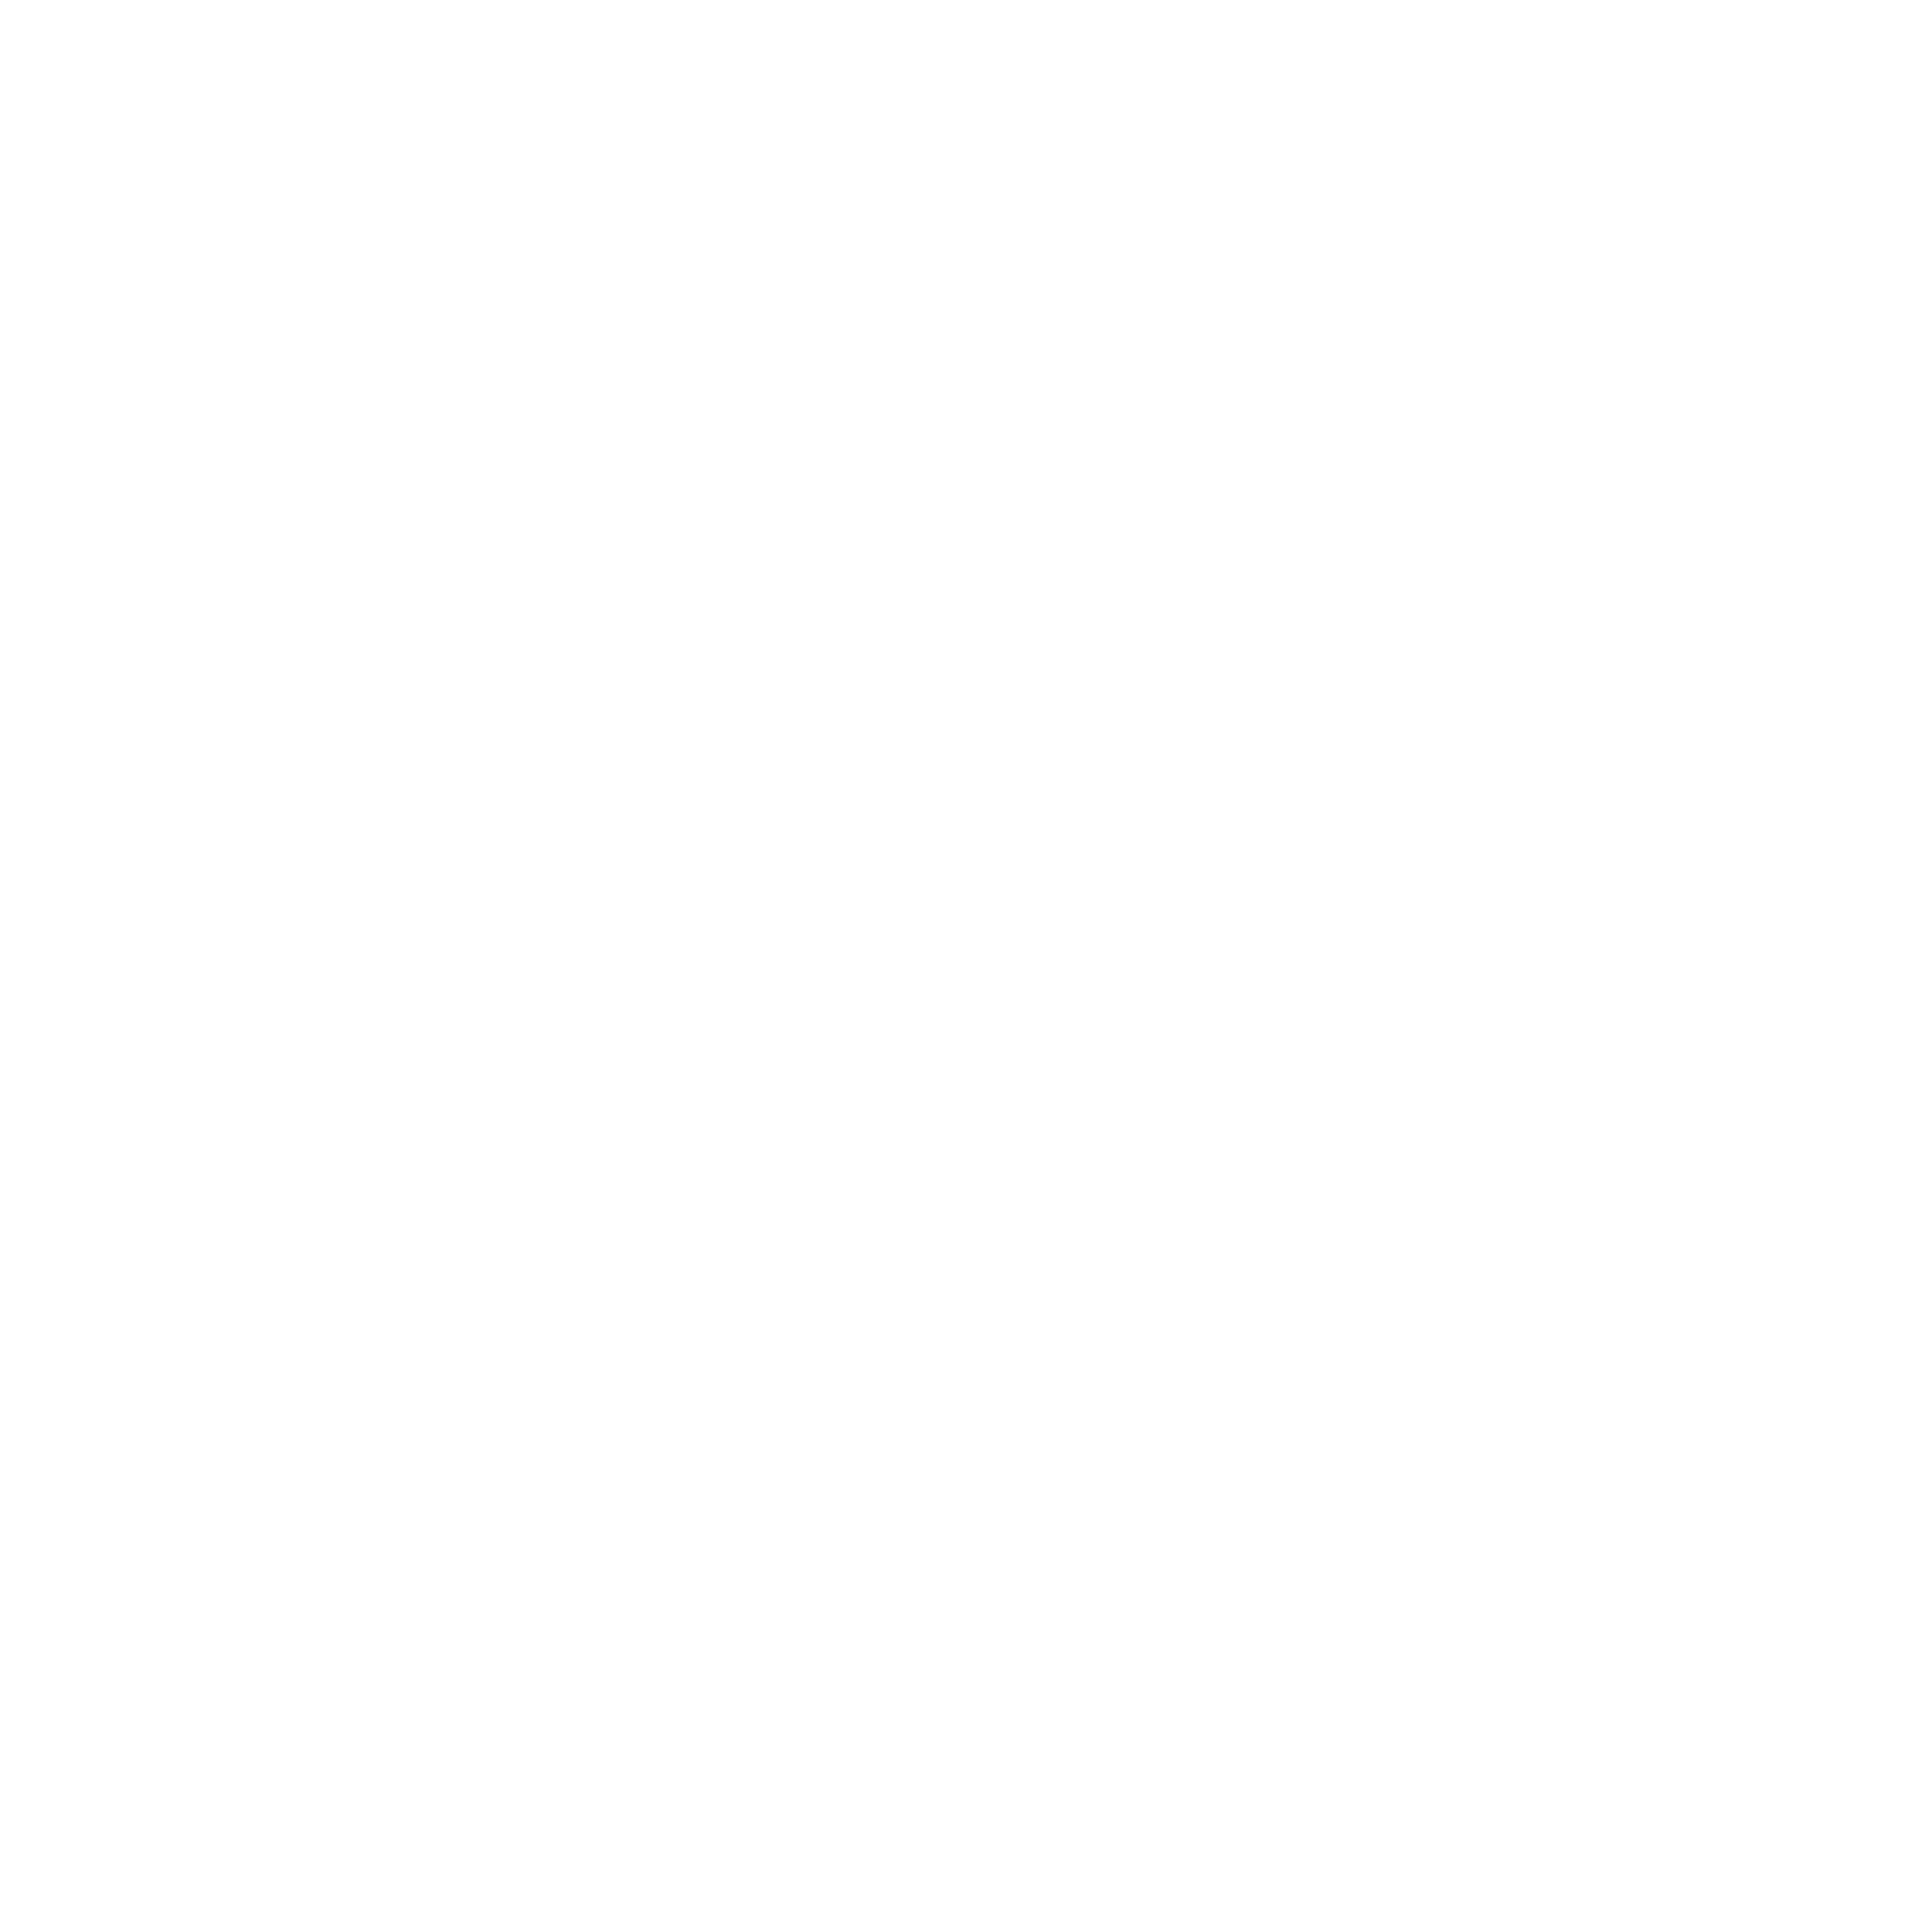 ConsenSys Logo